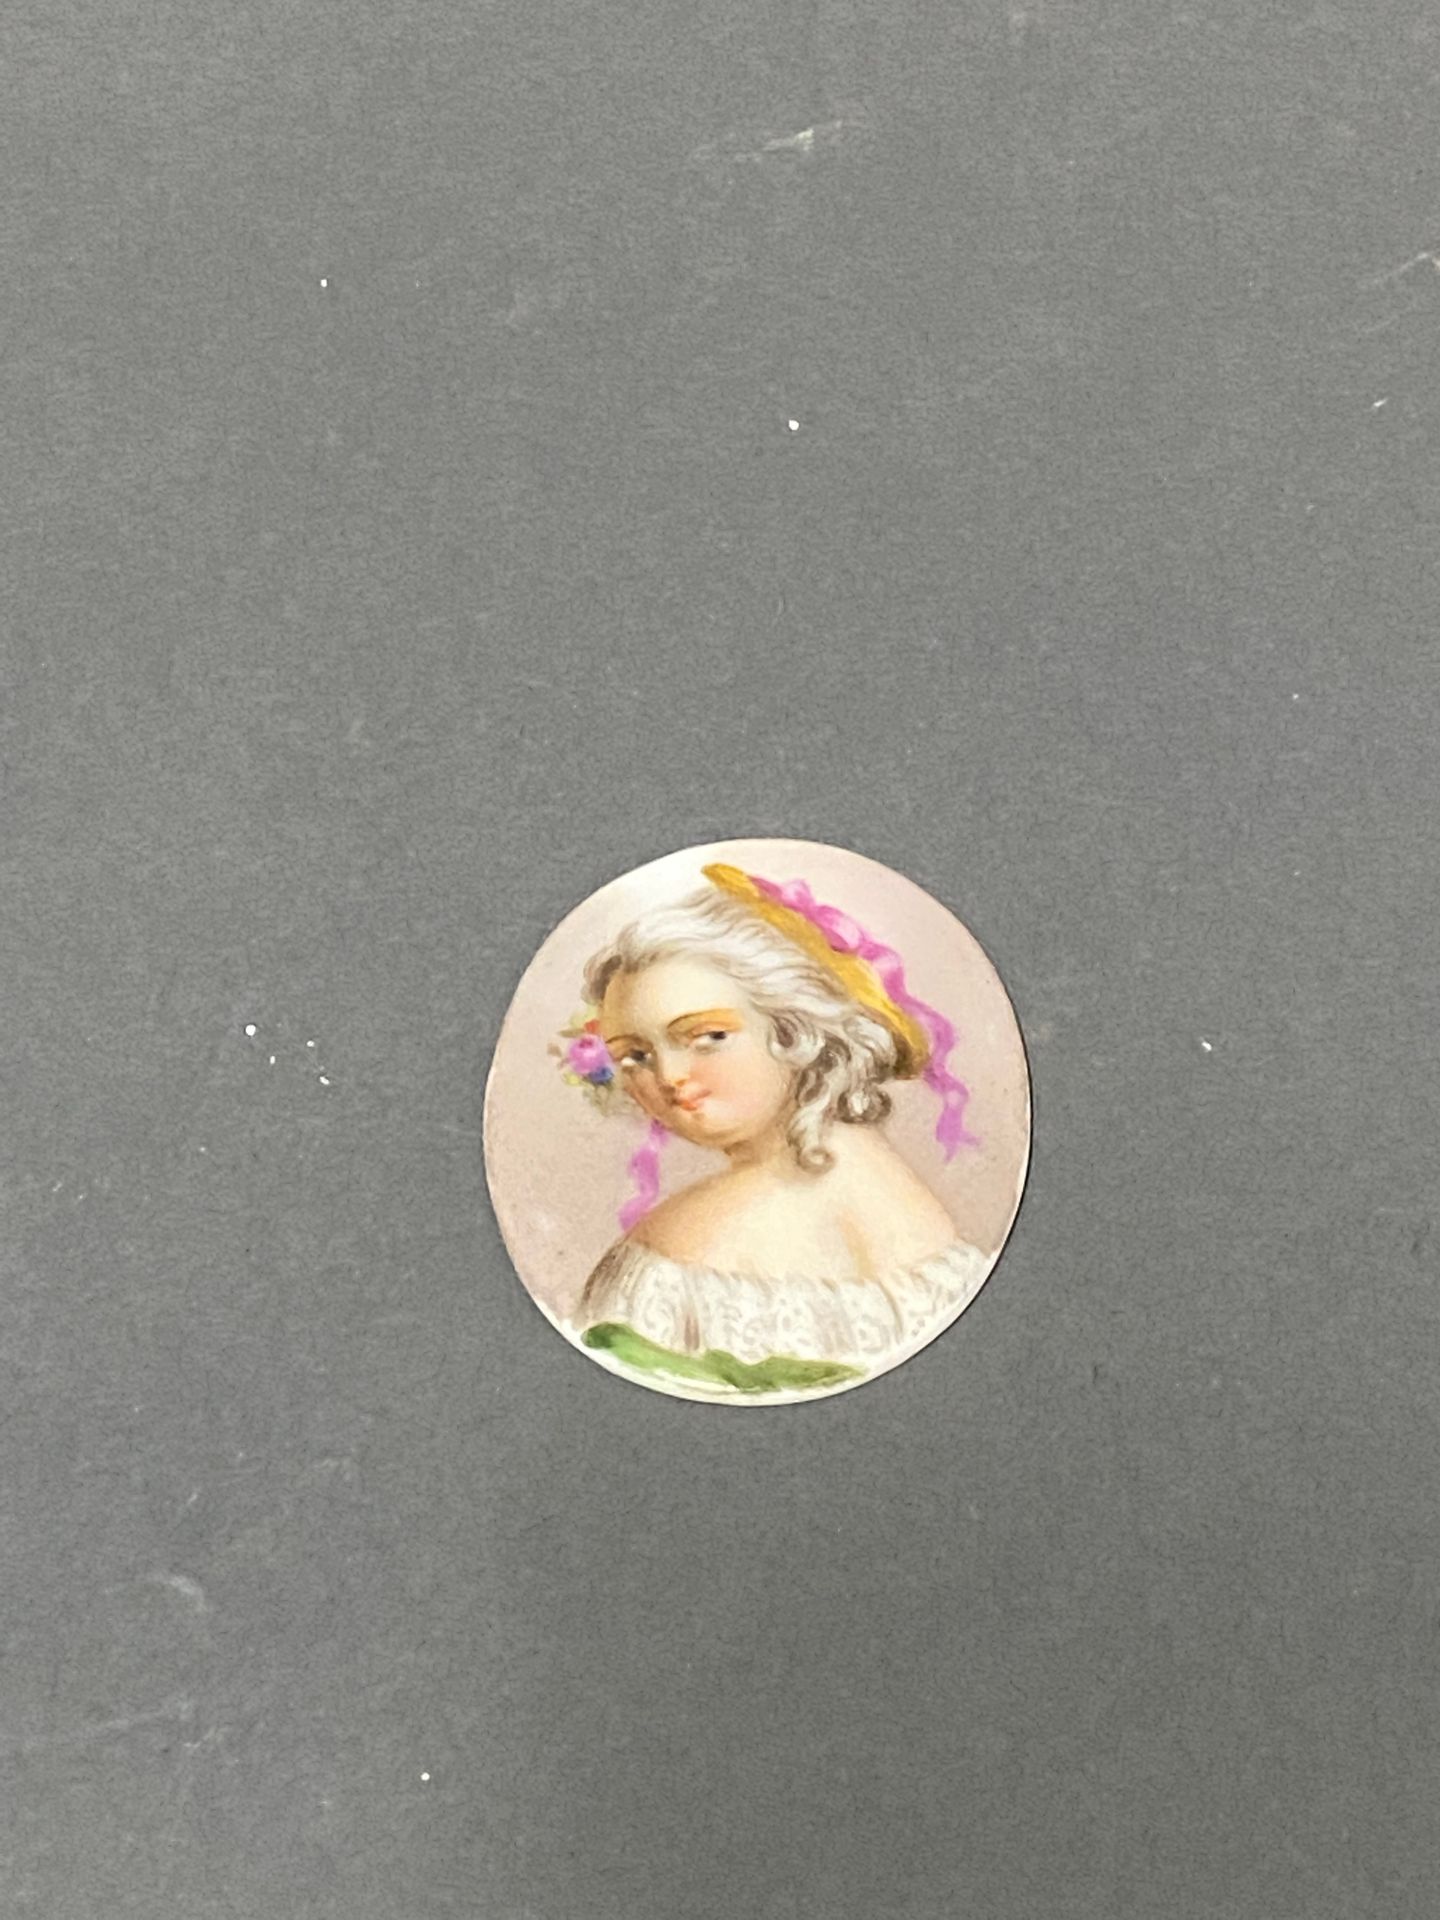 Null "Porträt eines Kindes"

Miniatur auf Porzellanplatte 

4,3 x 3,4 cm